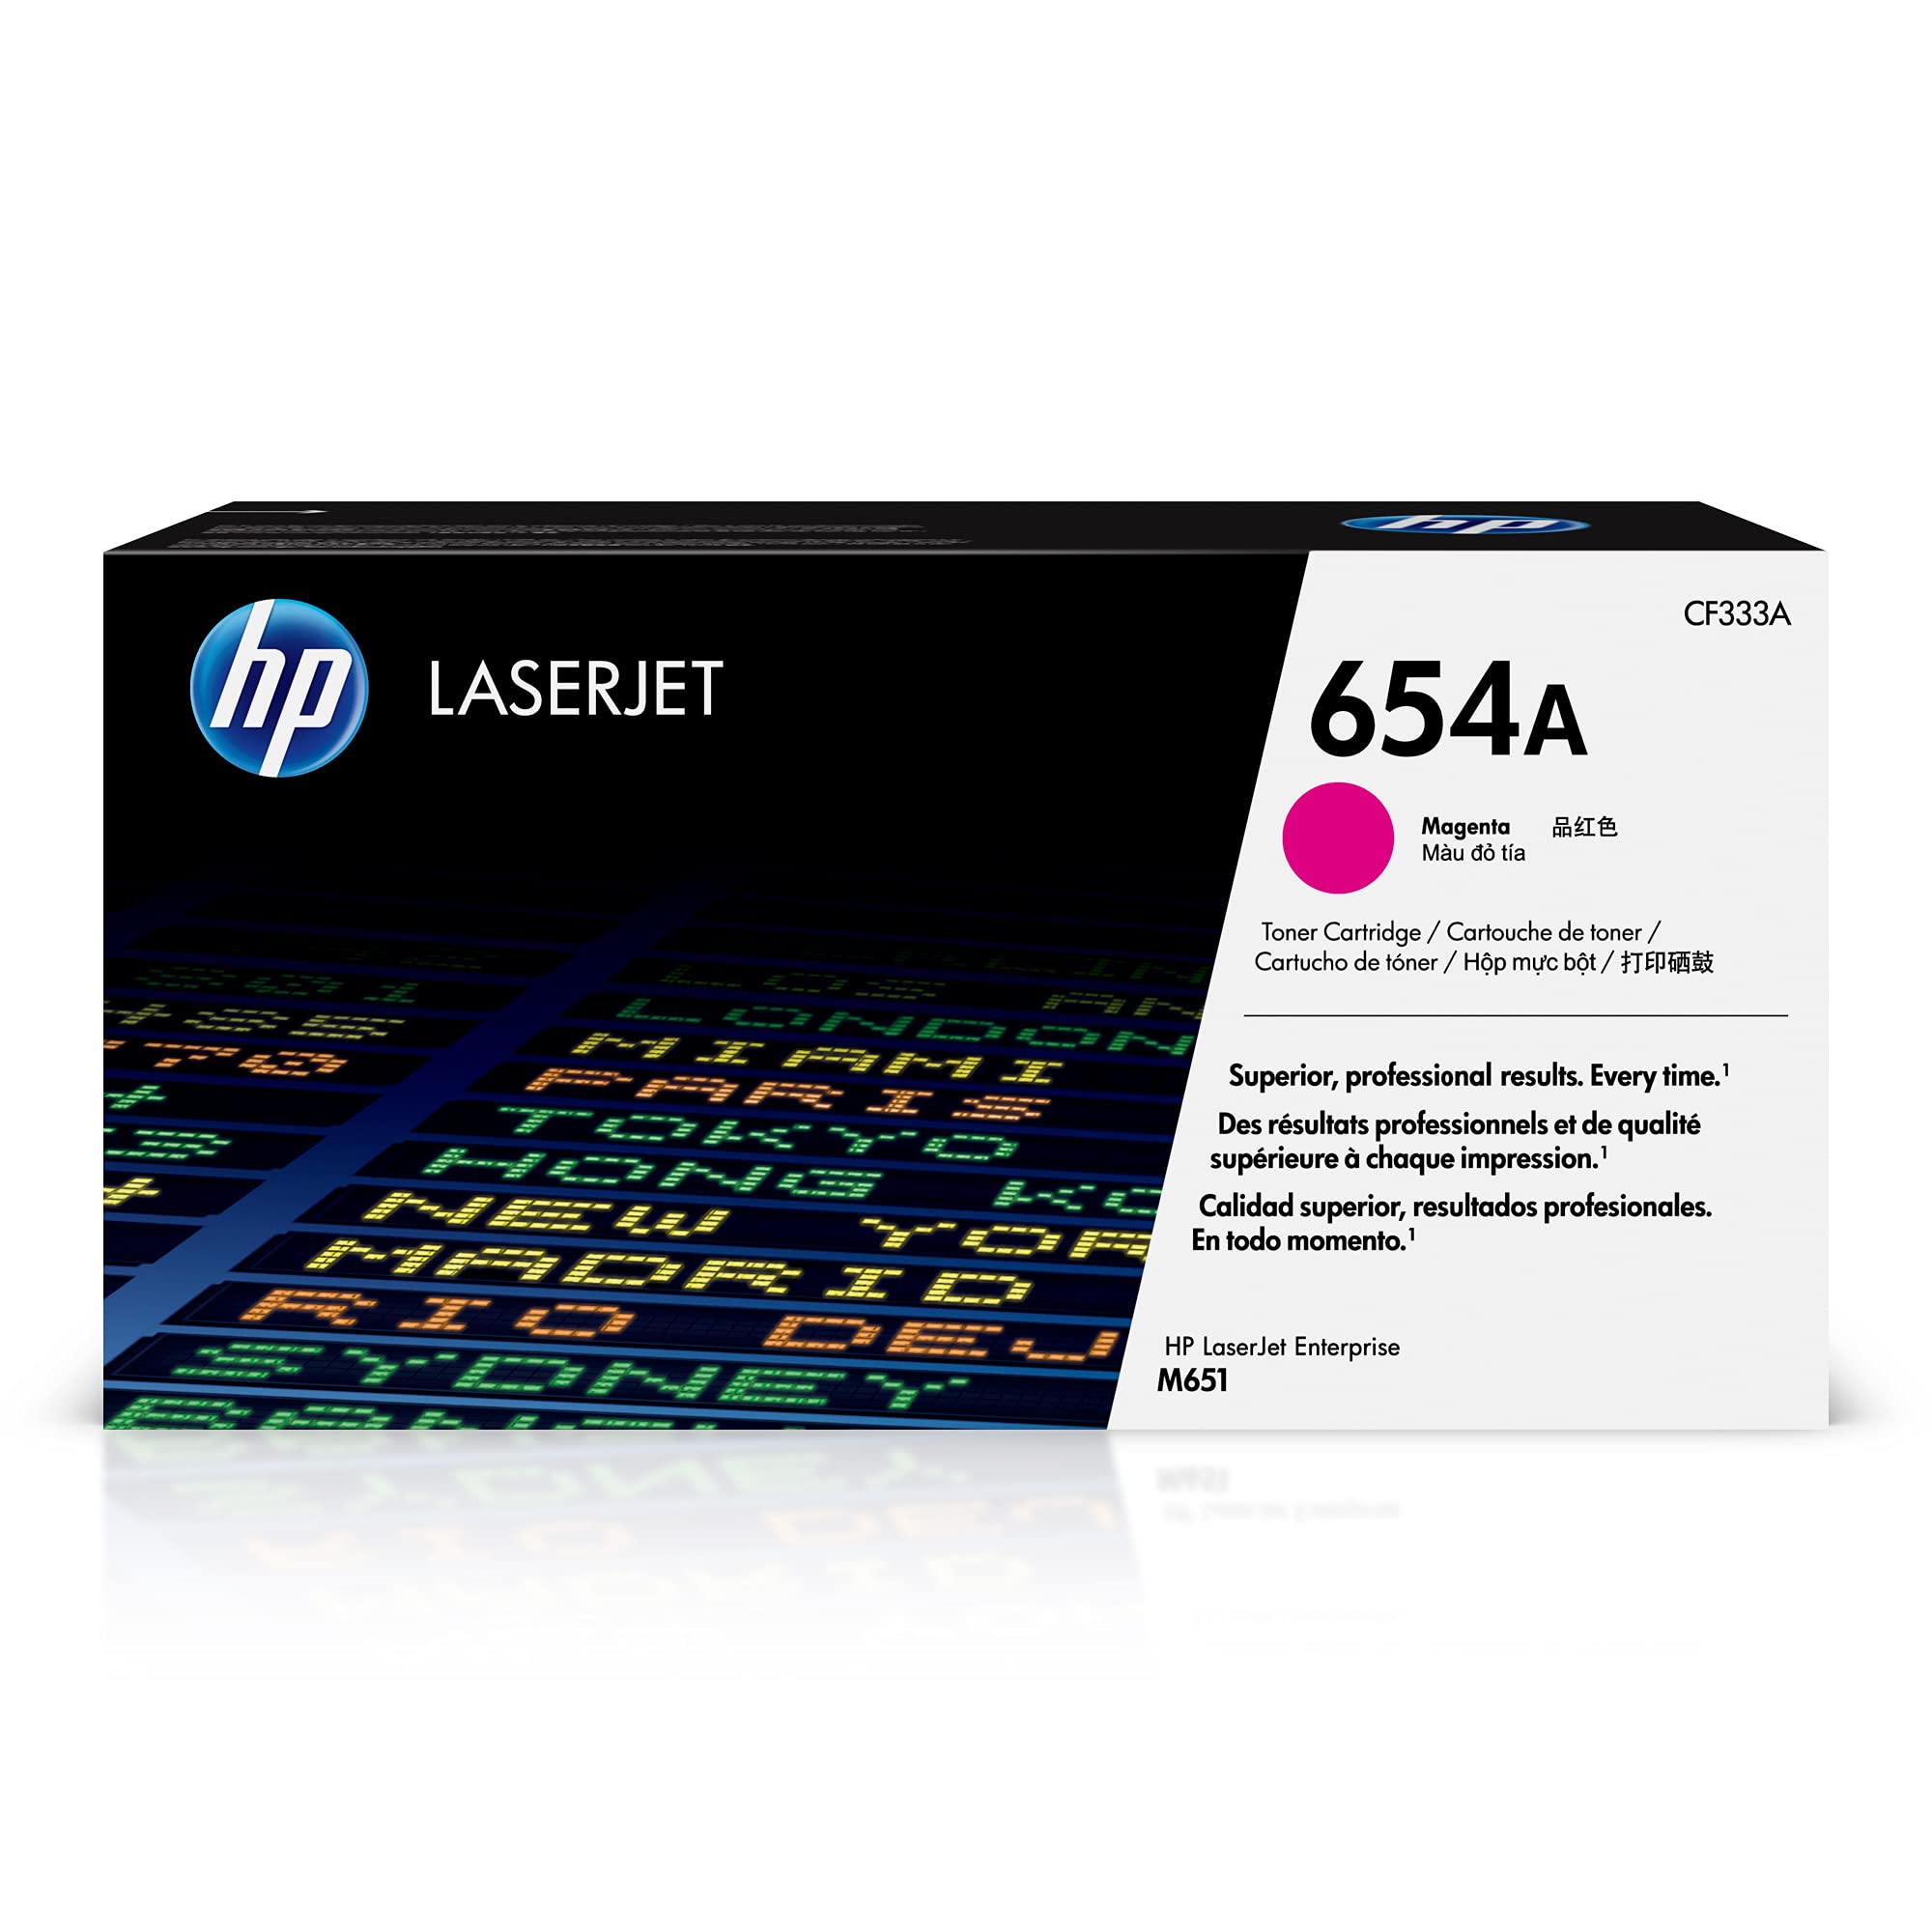 HP Оригинальный картридж с пурпурным тонером 654A | Работает с серией Color LaserJet Enterprise M651 | CF333A